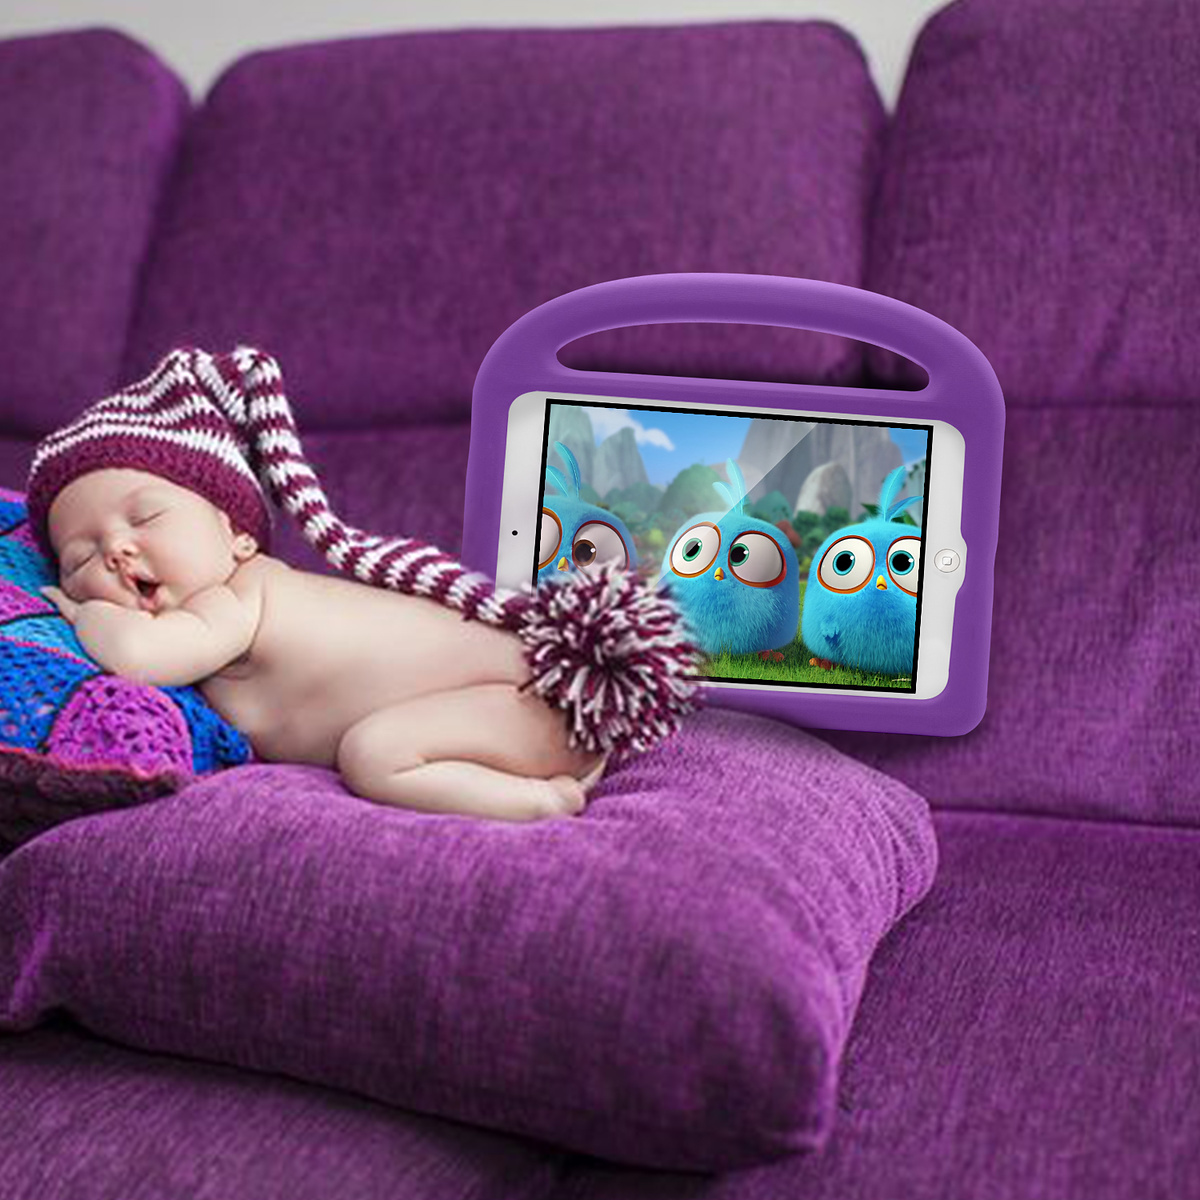 Barnfodral med ställ till iPad 9.7, Air/Air2, Pro 9.7, lila